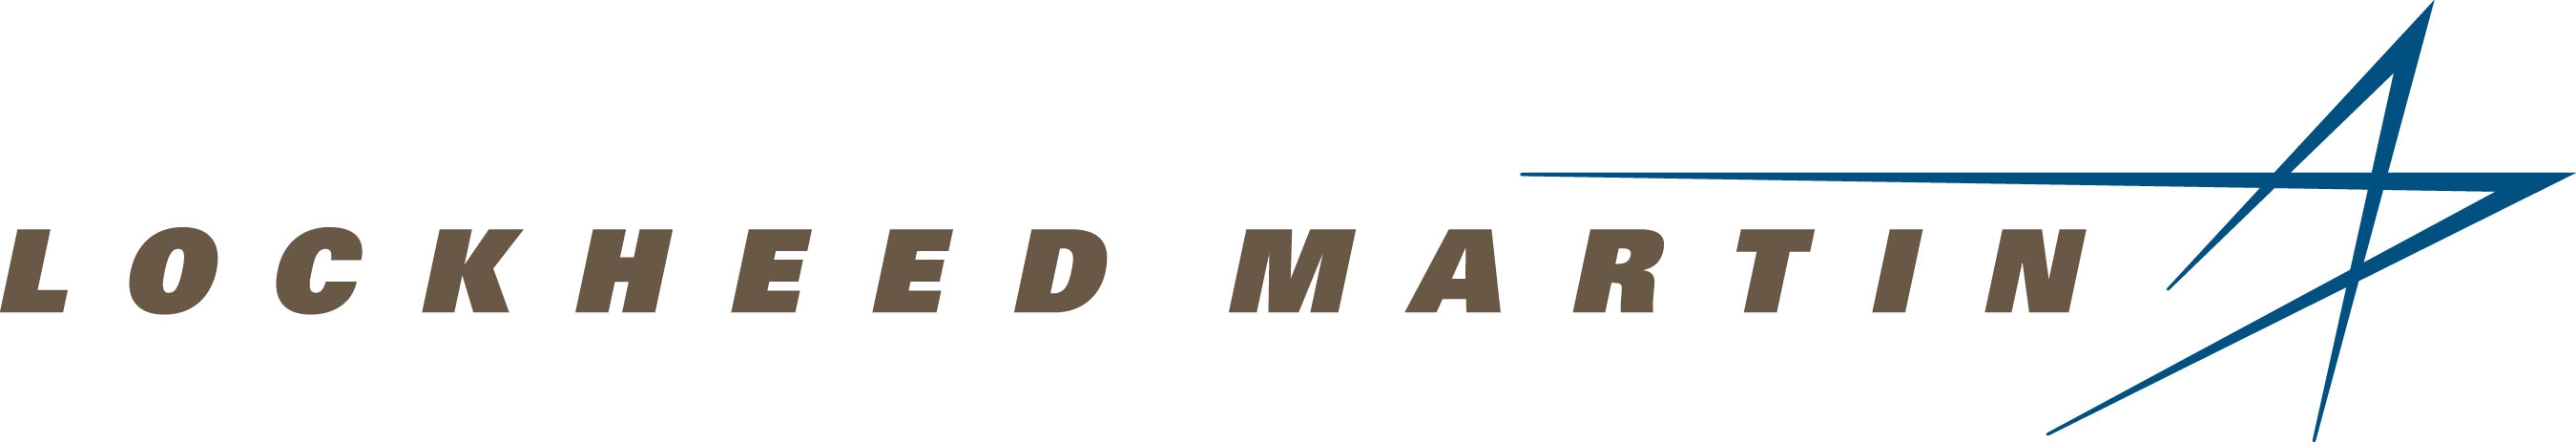 The Lockheed Martin logo